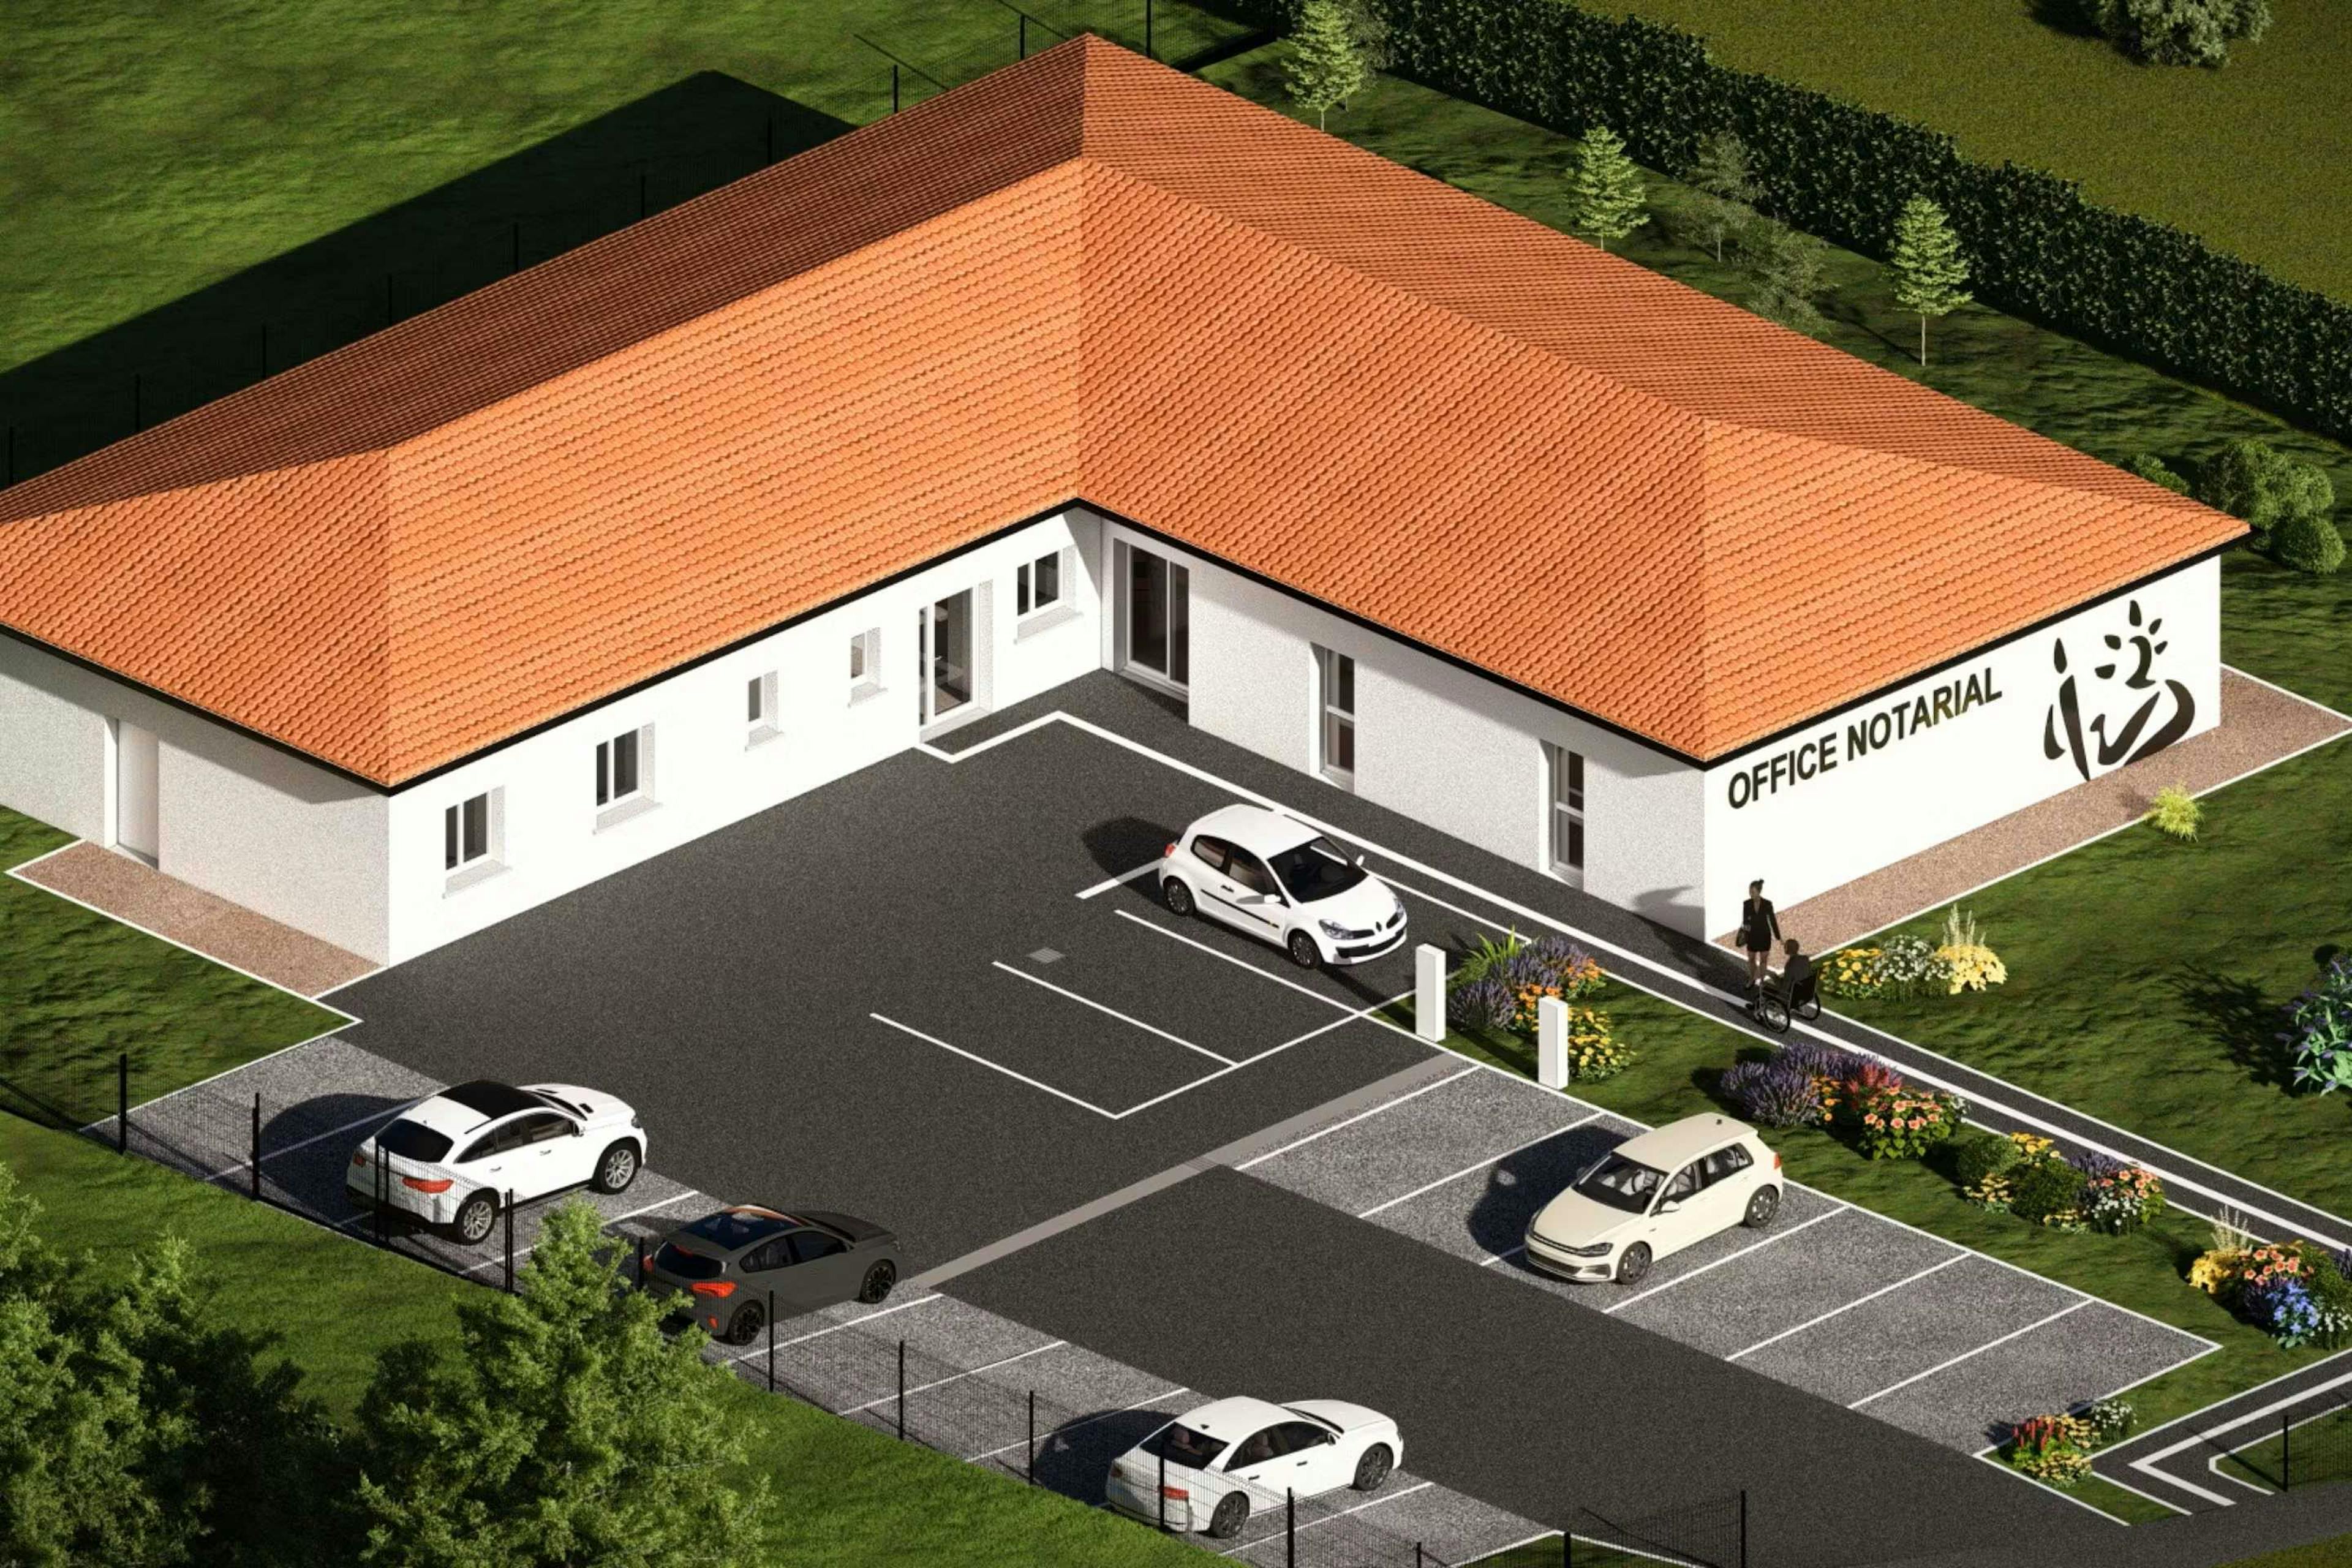 Office notarial neuve avec parking pour accueil du public